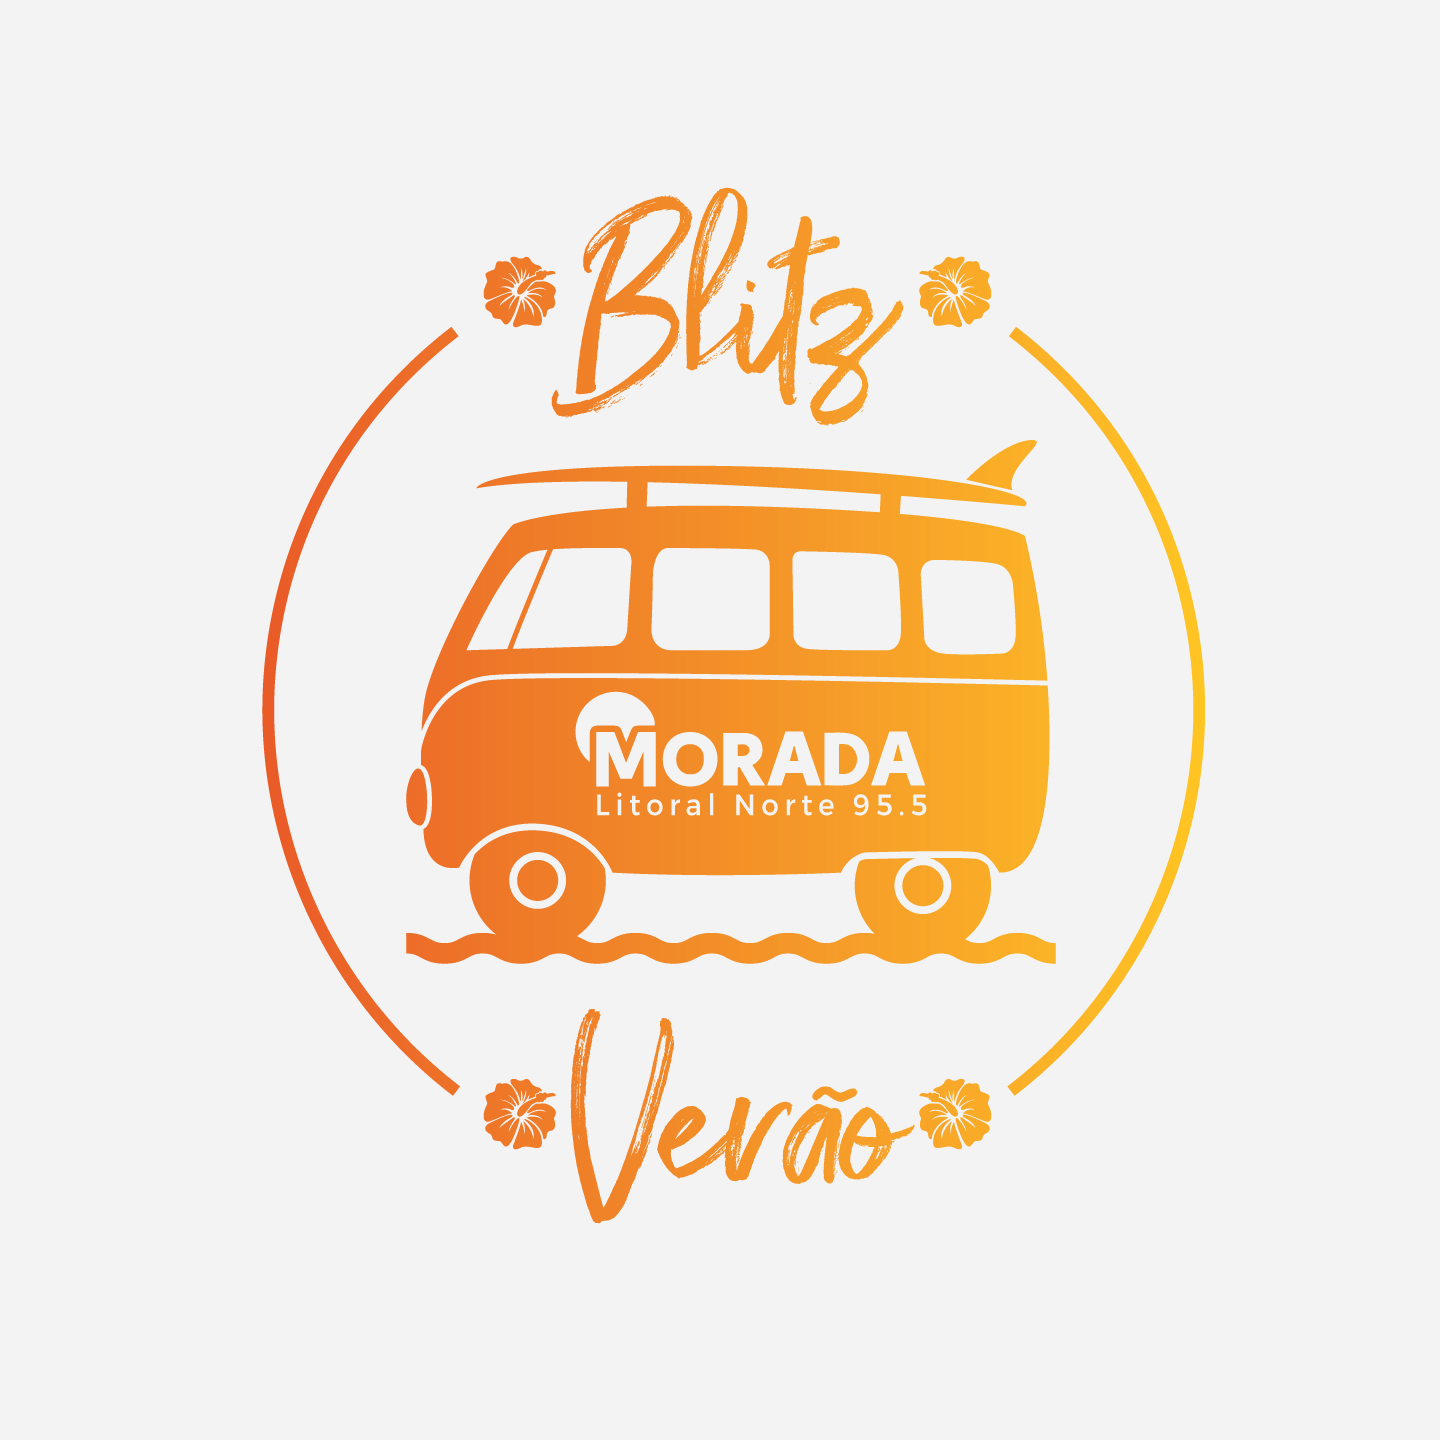 Morada_Verao_back04